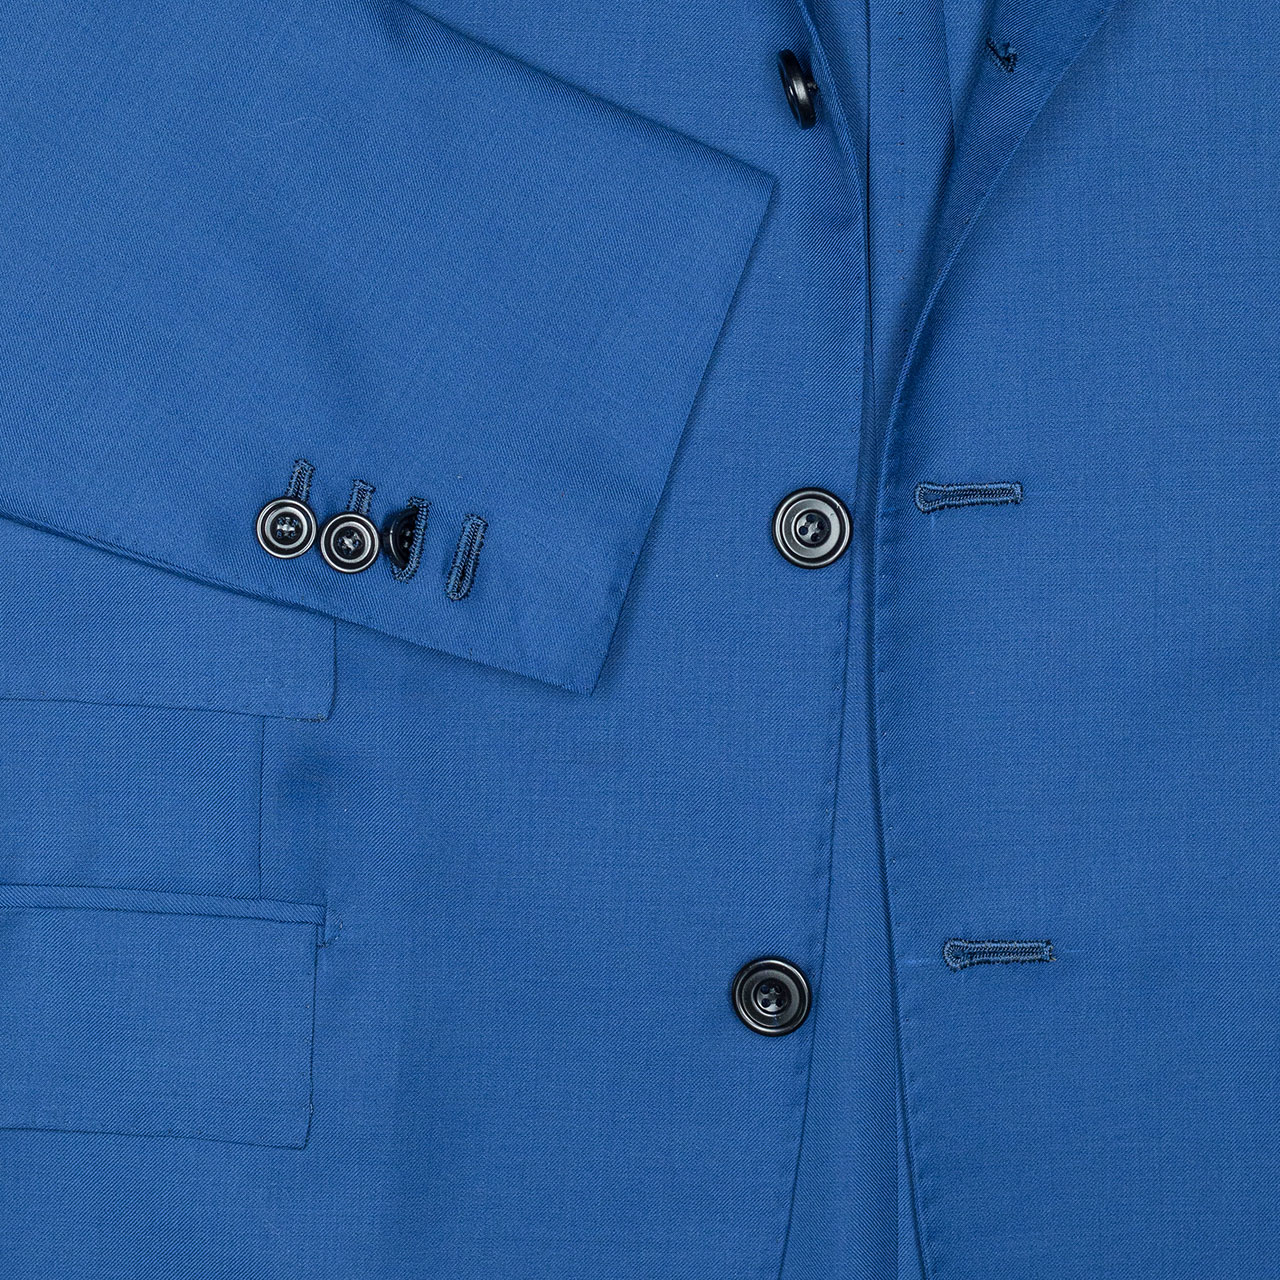 Kiton Anzug in saphirblau mit Pattentaschen und Billettasche